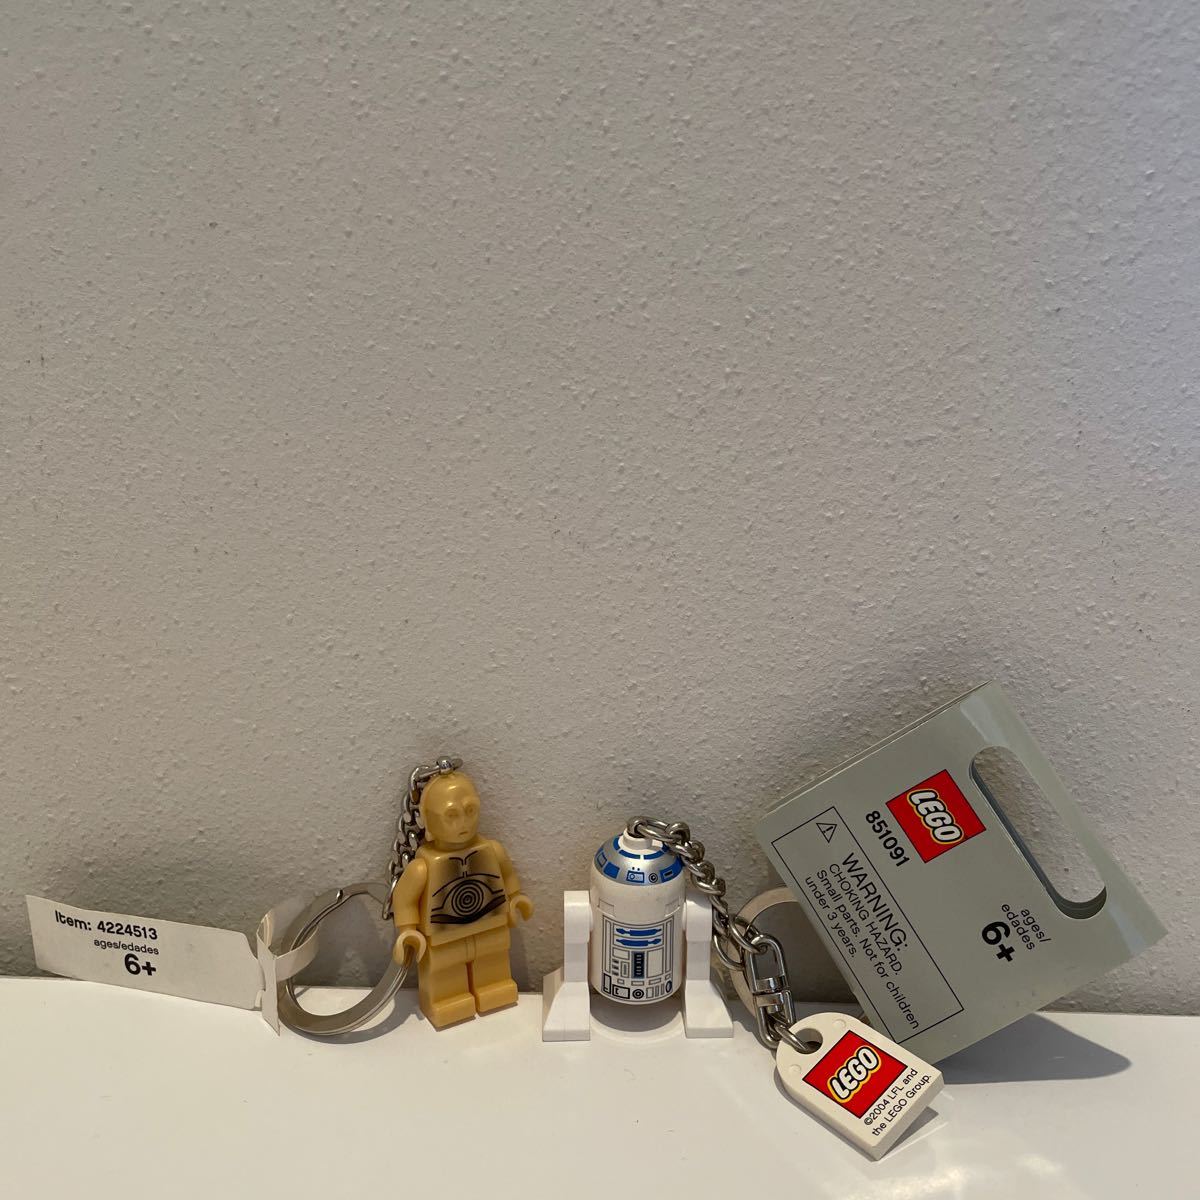  Звездные войны STAR WARS Lego LEGO брелок, держатель для ключа R2-D2 C-3PO